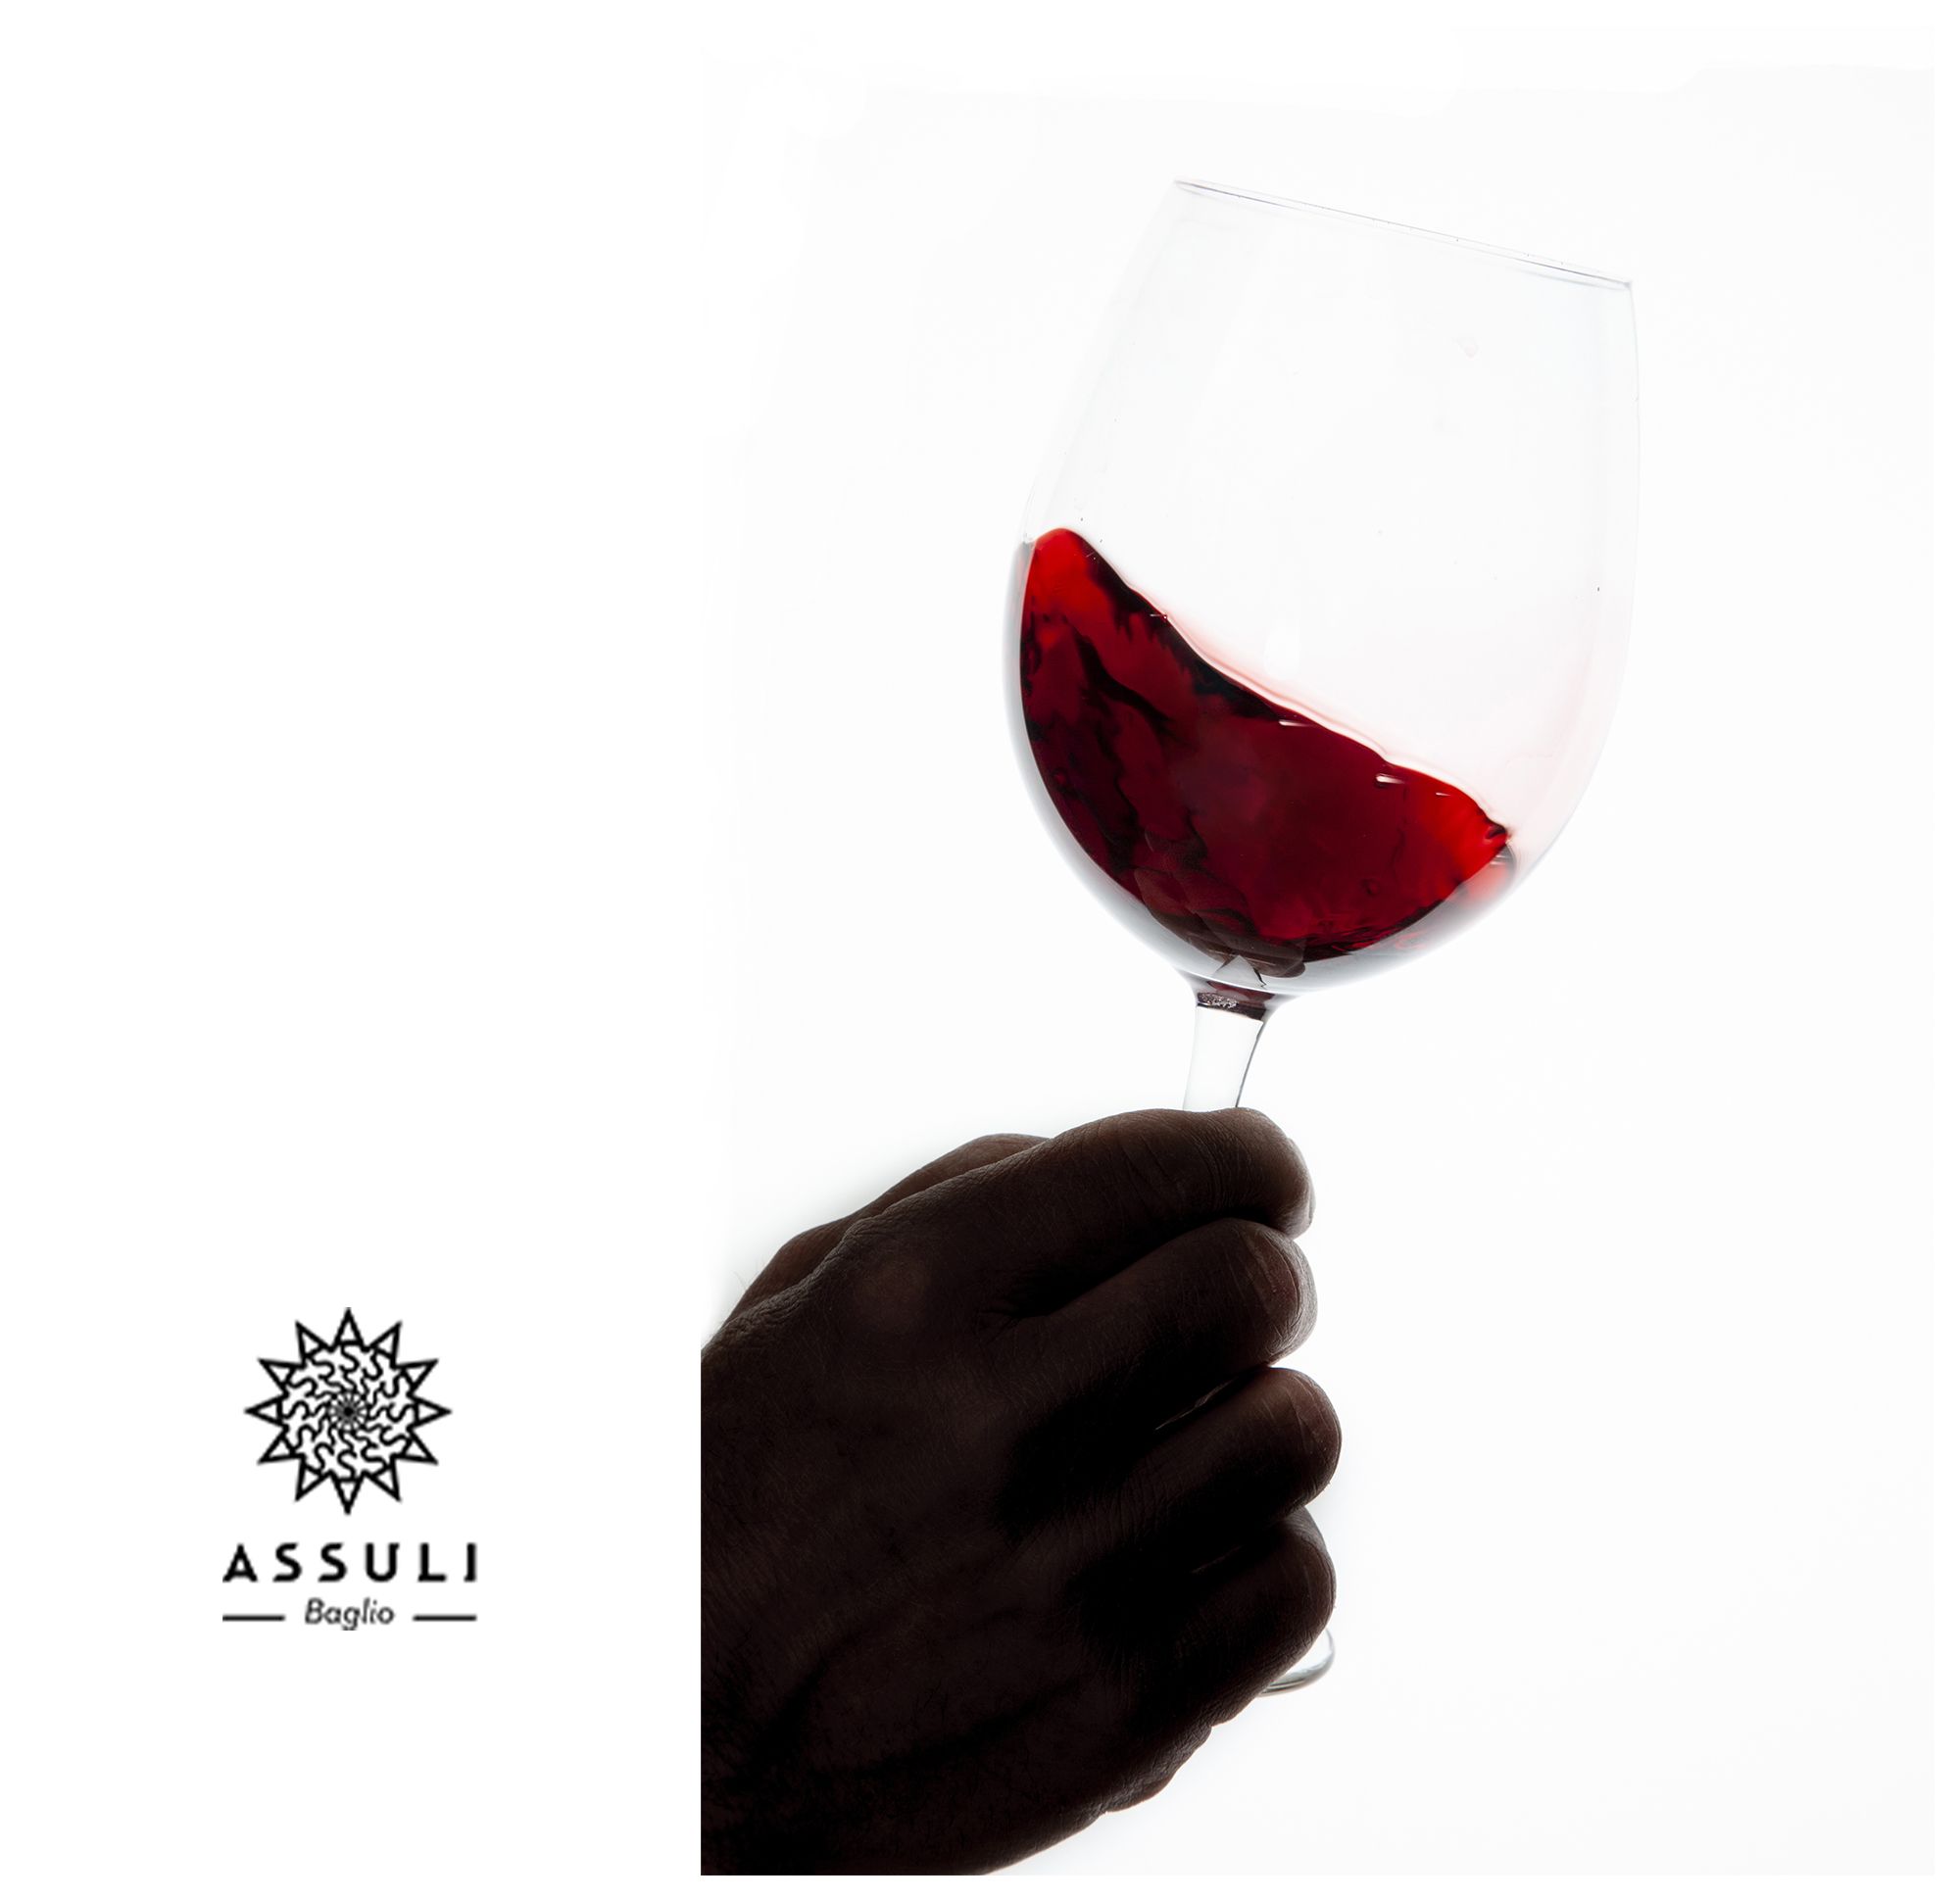 Fotografie per il sito ed i social di Assuli Winery.